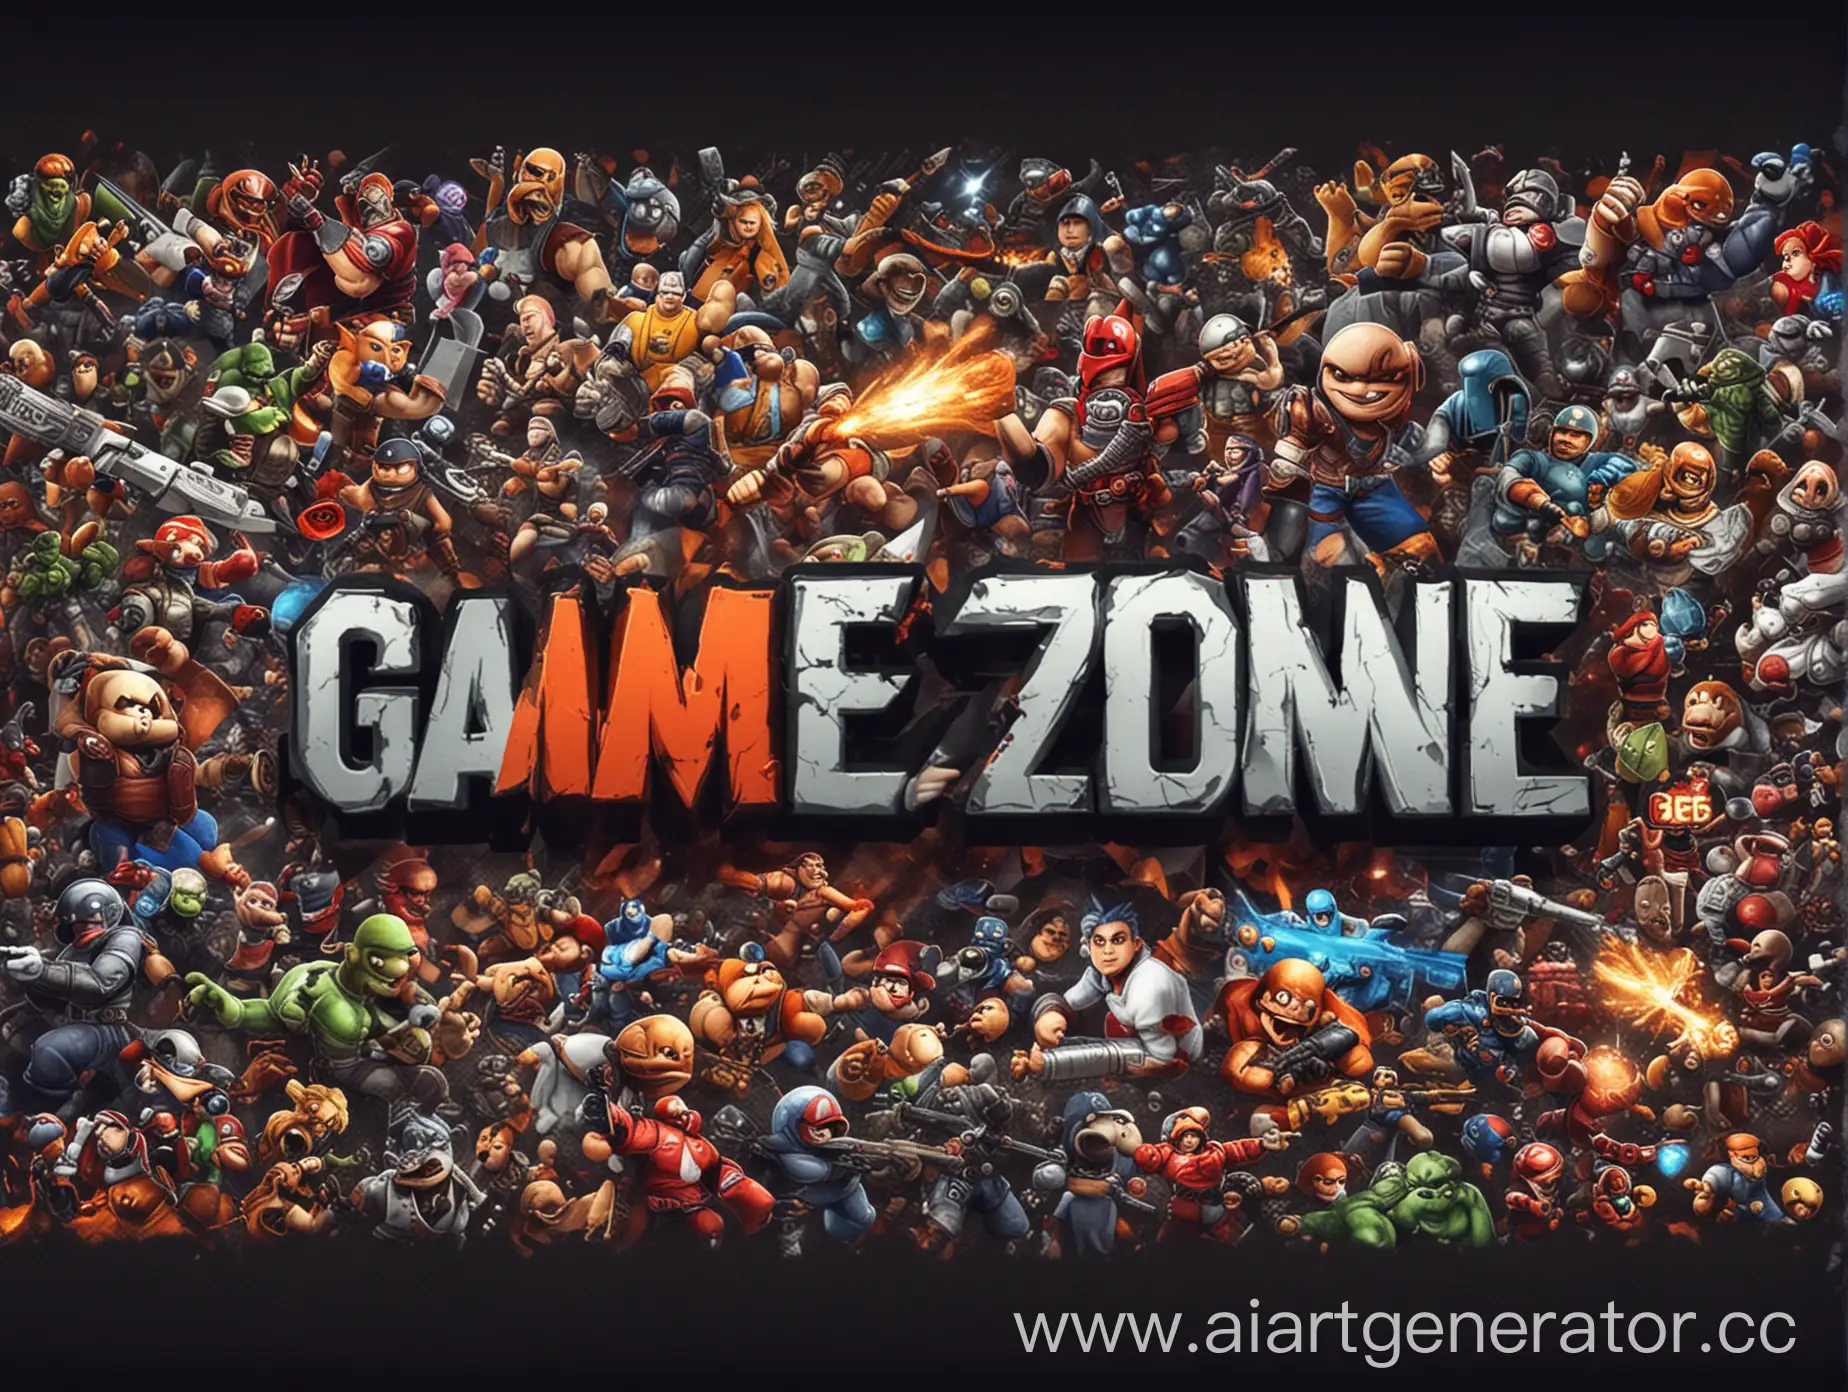 Картинка на заставку игрового акаунта в ютуб, на ней должна быть игровая тематика и посередине написано GameZone